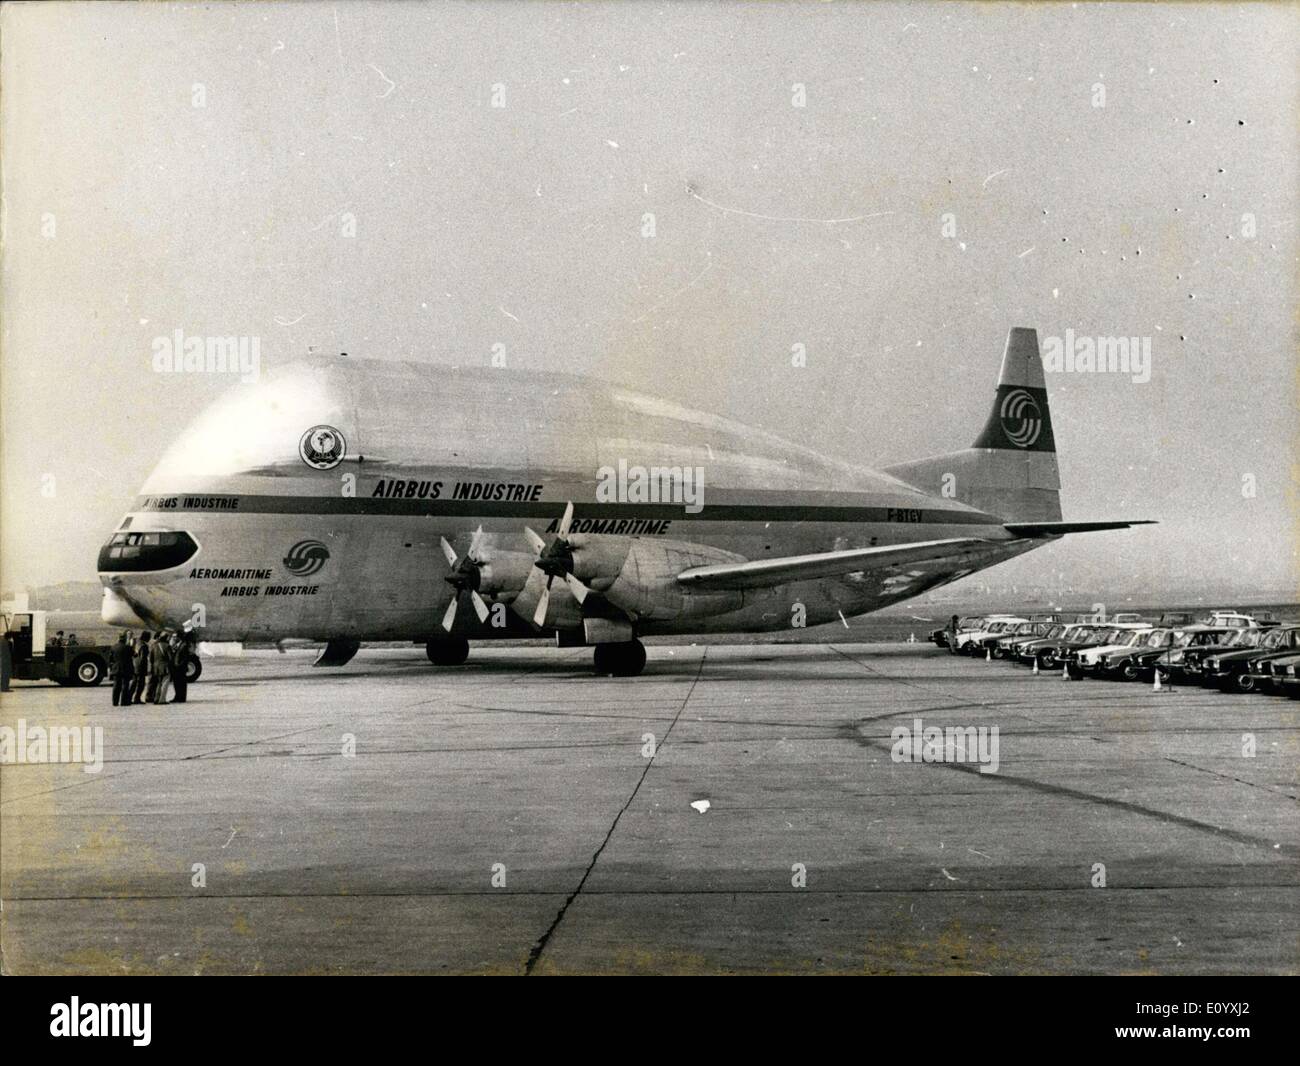 Sept. 30, 1971 - Super-Guppy-Flugzeug von Deutschen Aerospace Company Airbus ESS gekauft. Stockfoto